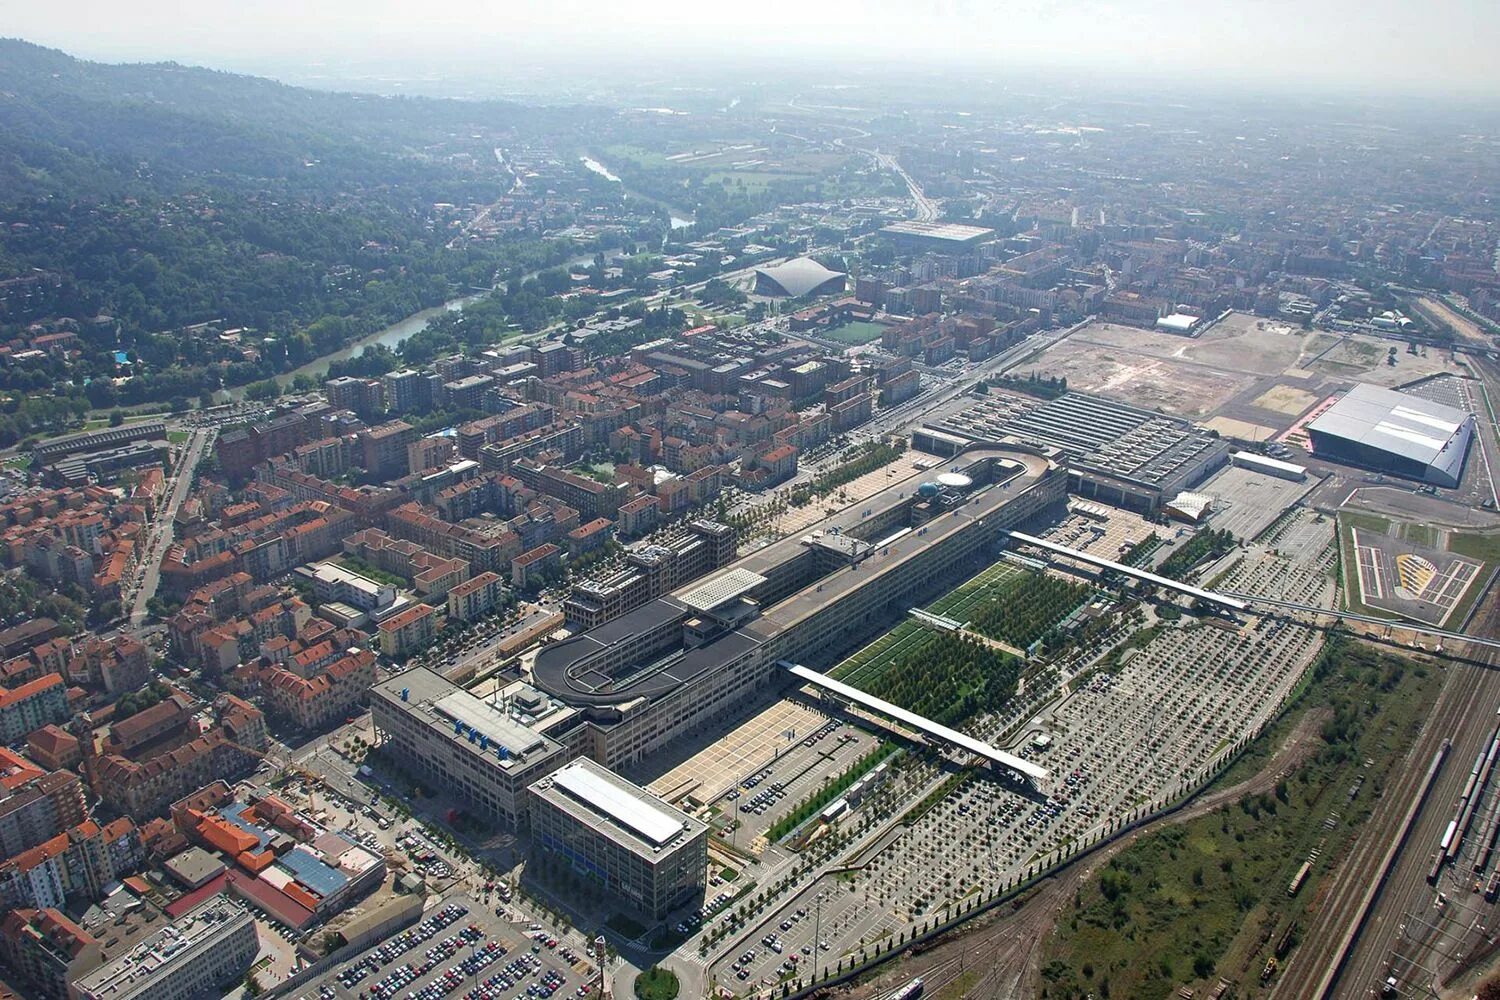 Завод Линготто в Турине. Fiat Lingotto в Турине. Линготто, Турин - Италия. Завод Fiat в Турине.